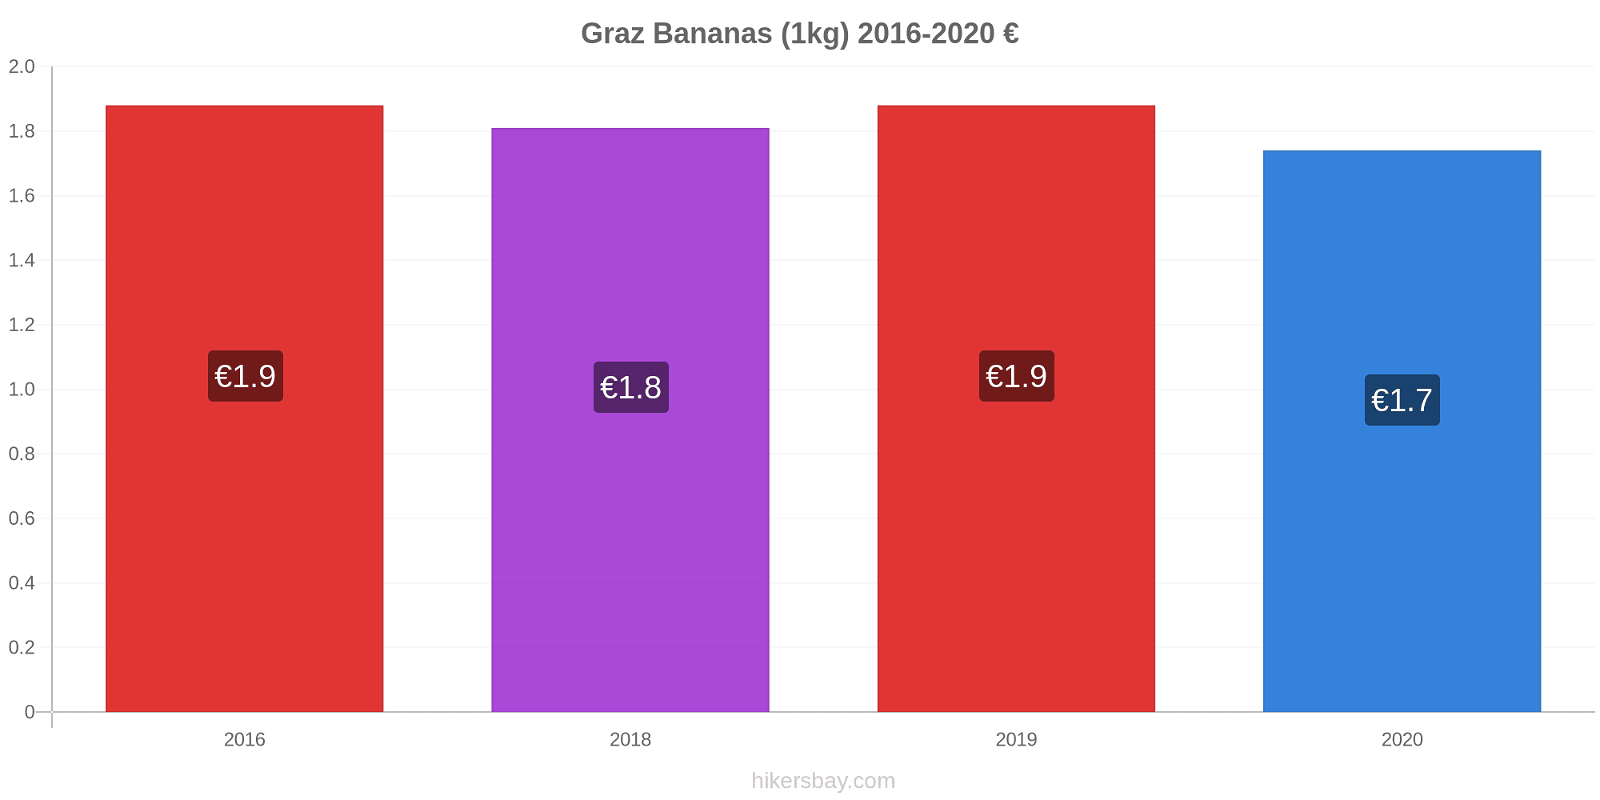 Graz price changes Bananas (1kg) hikersbay.com